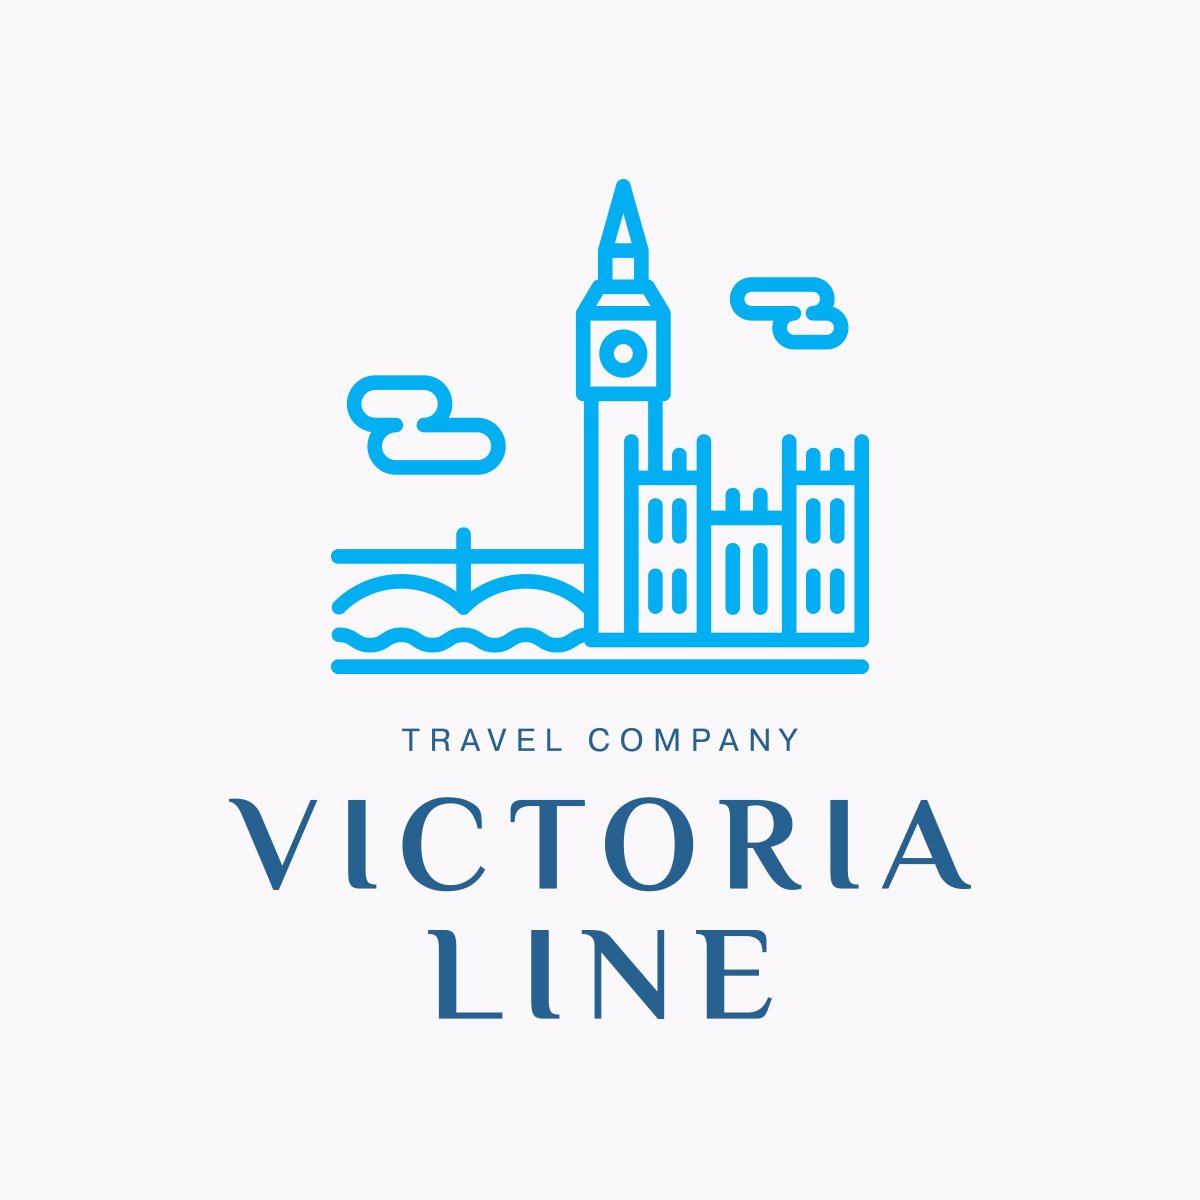 Victoria line